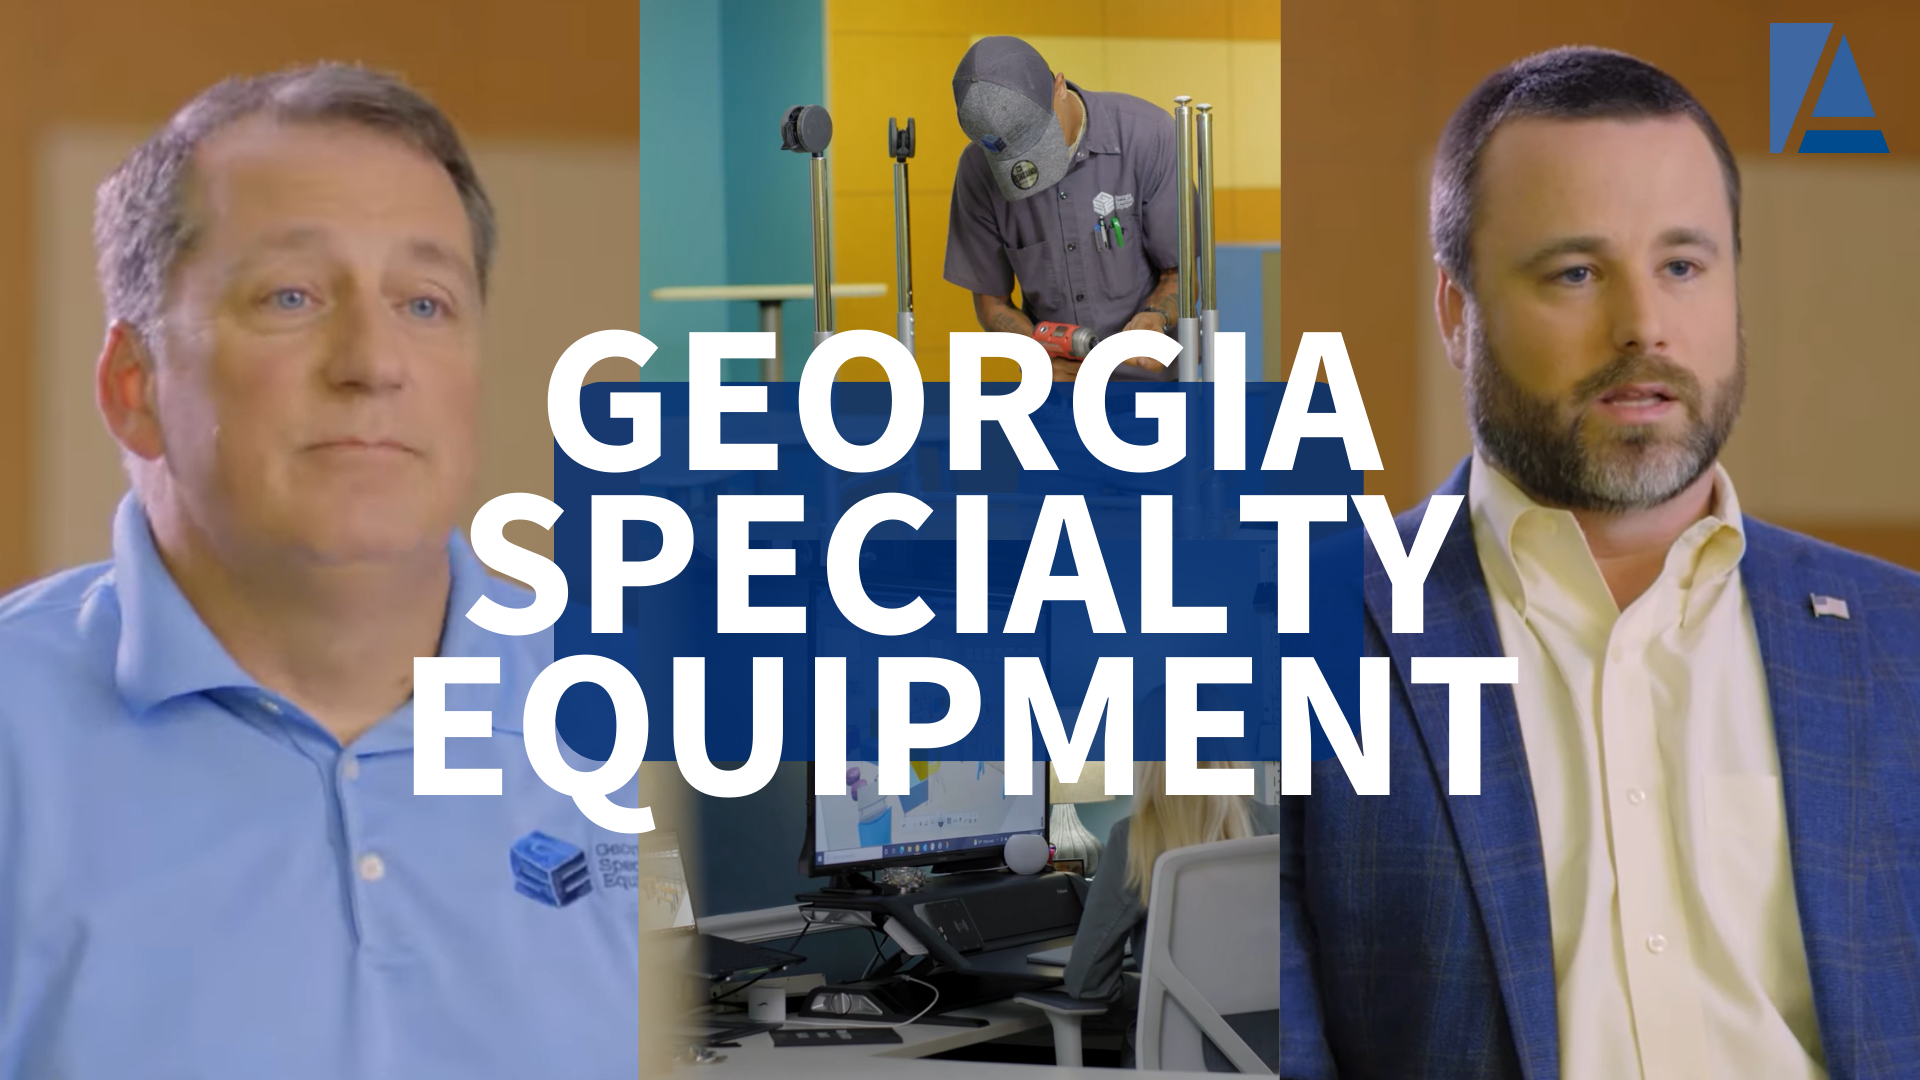 Georgia Specialty Equipment